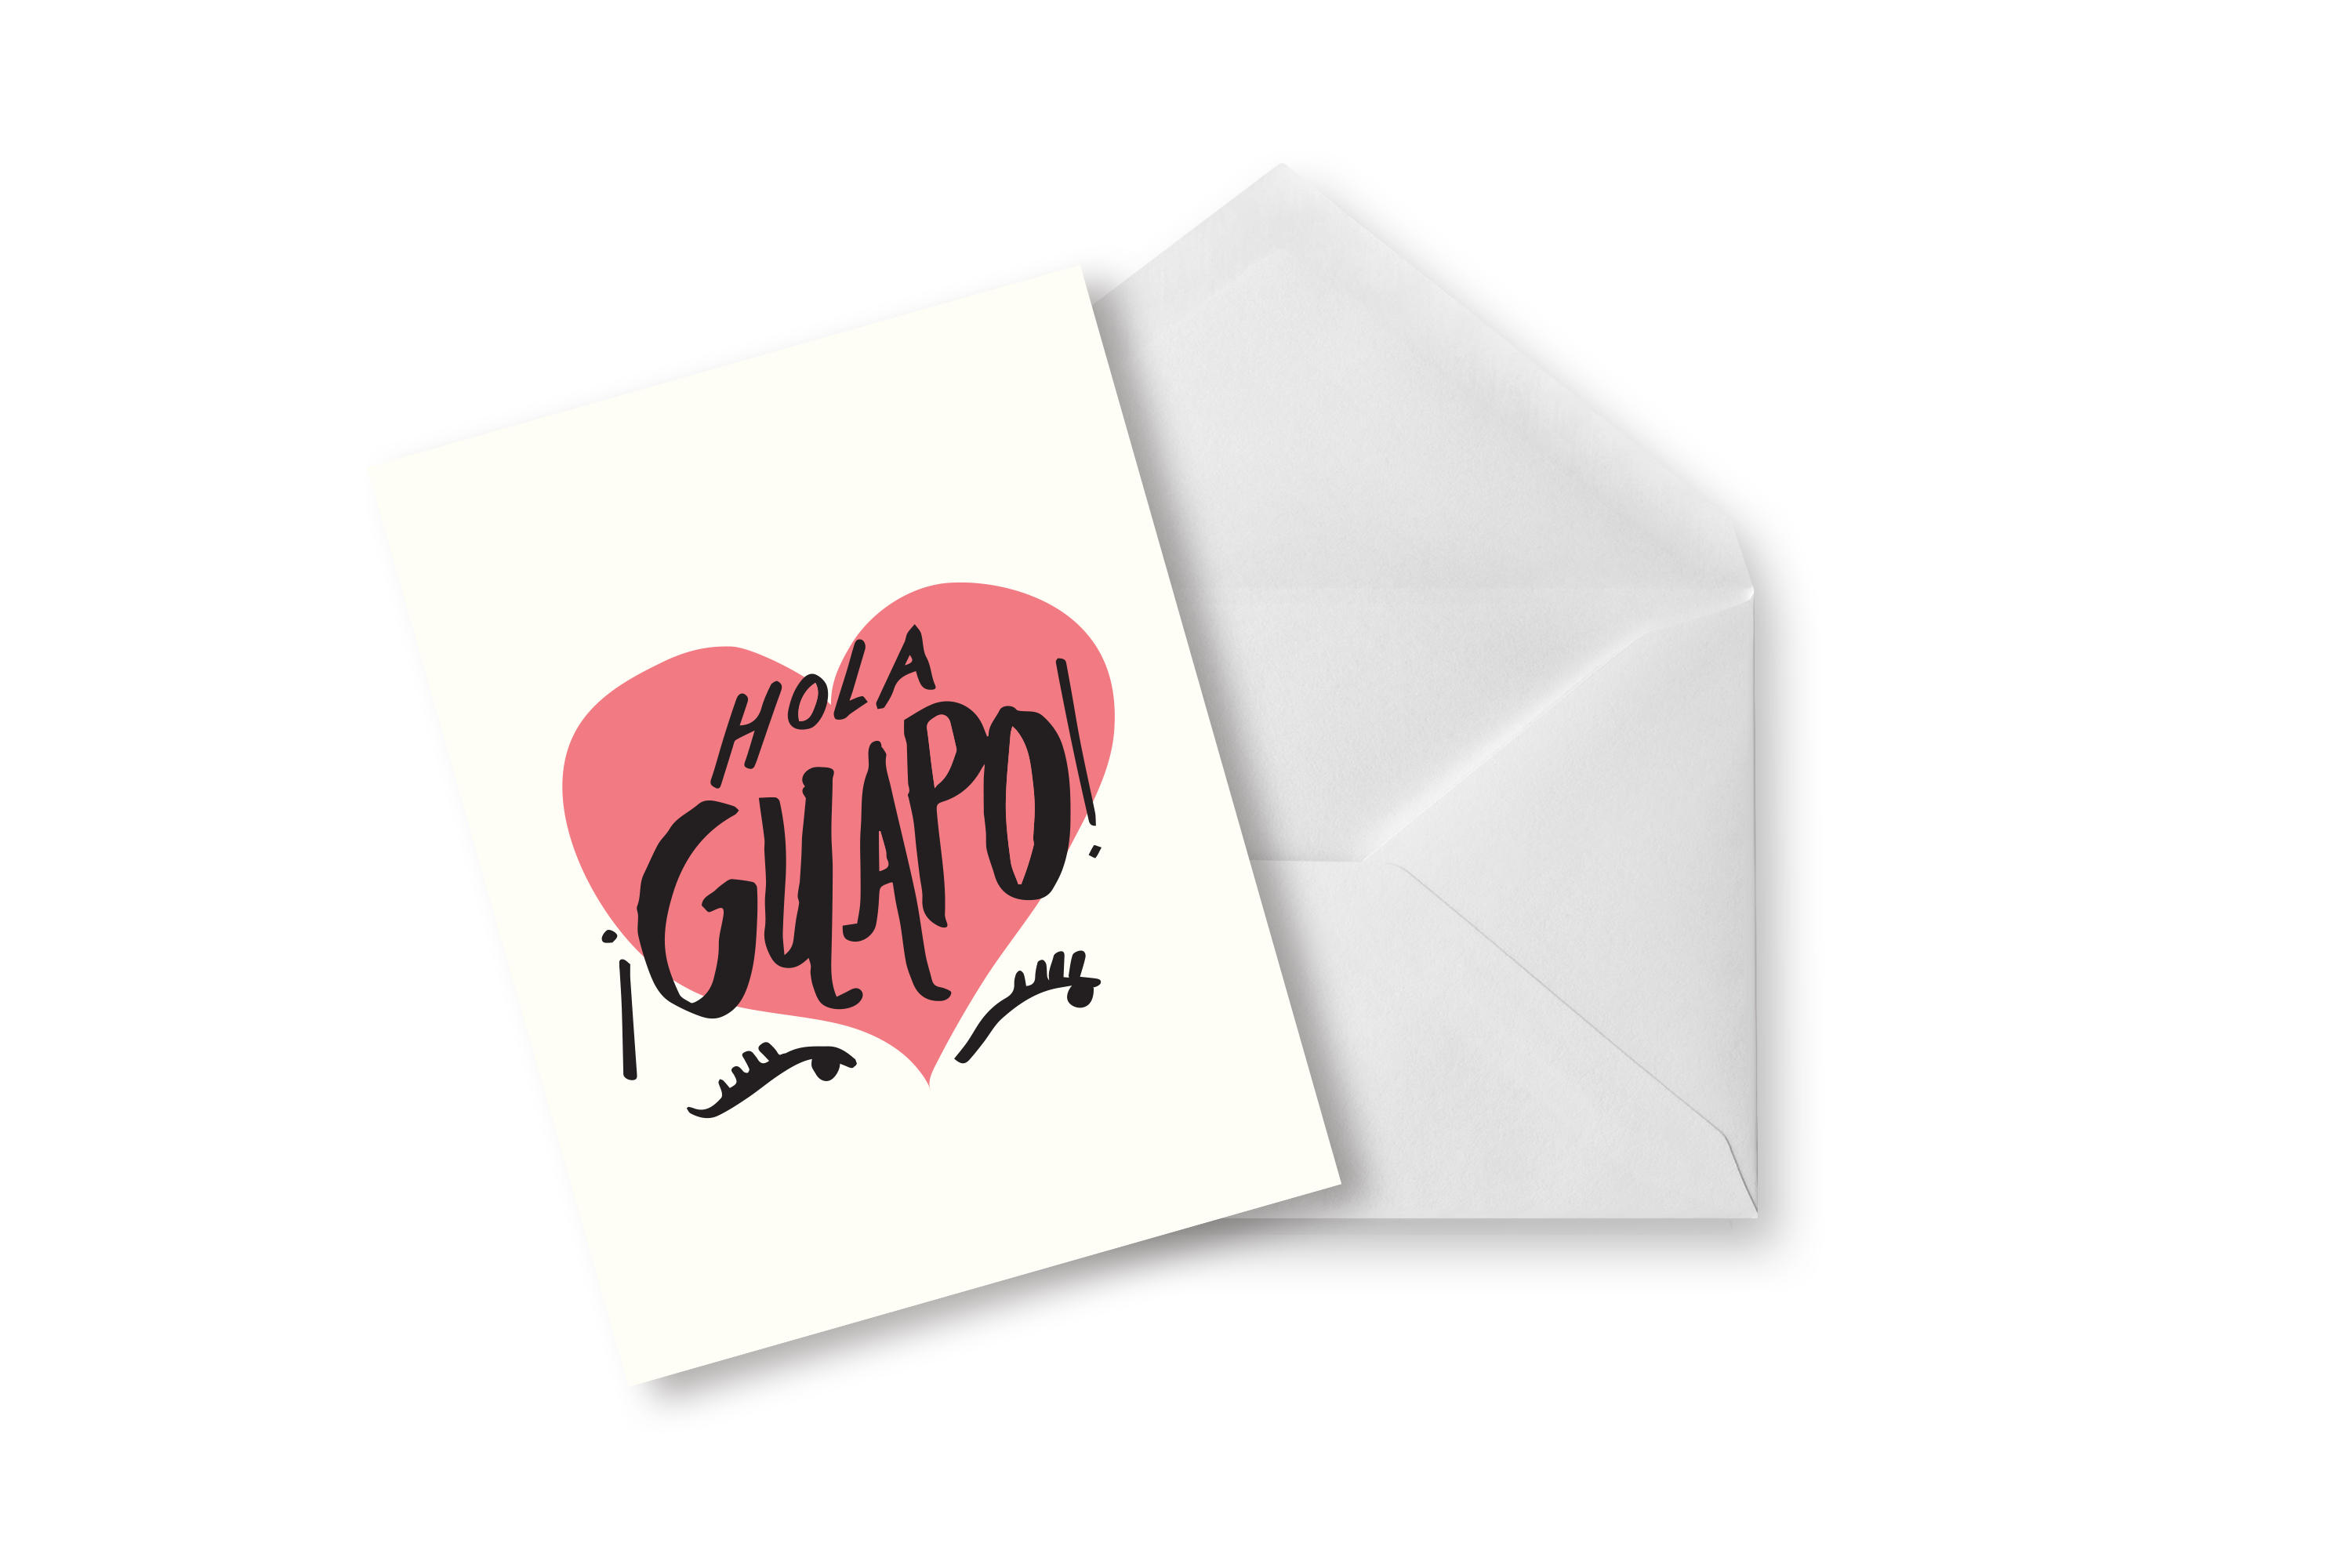 Tarjeta Hola Guapo – Holalola